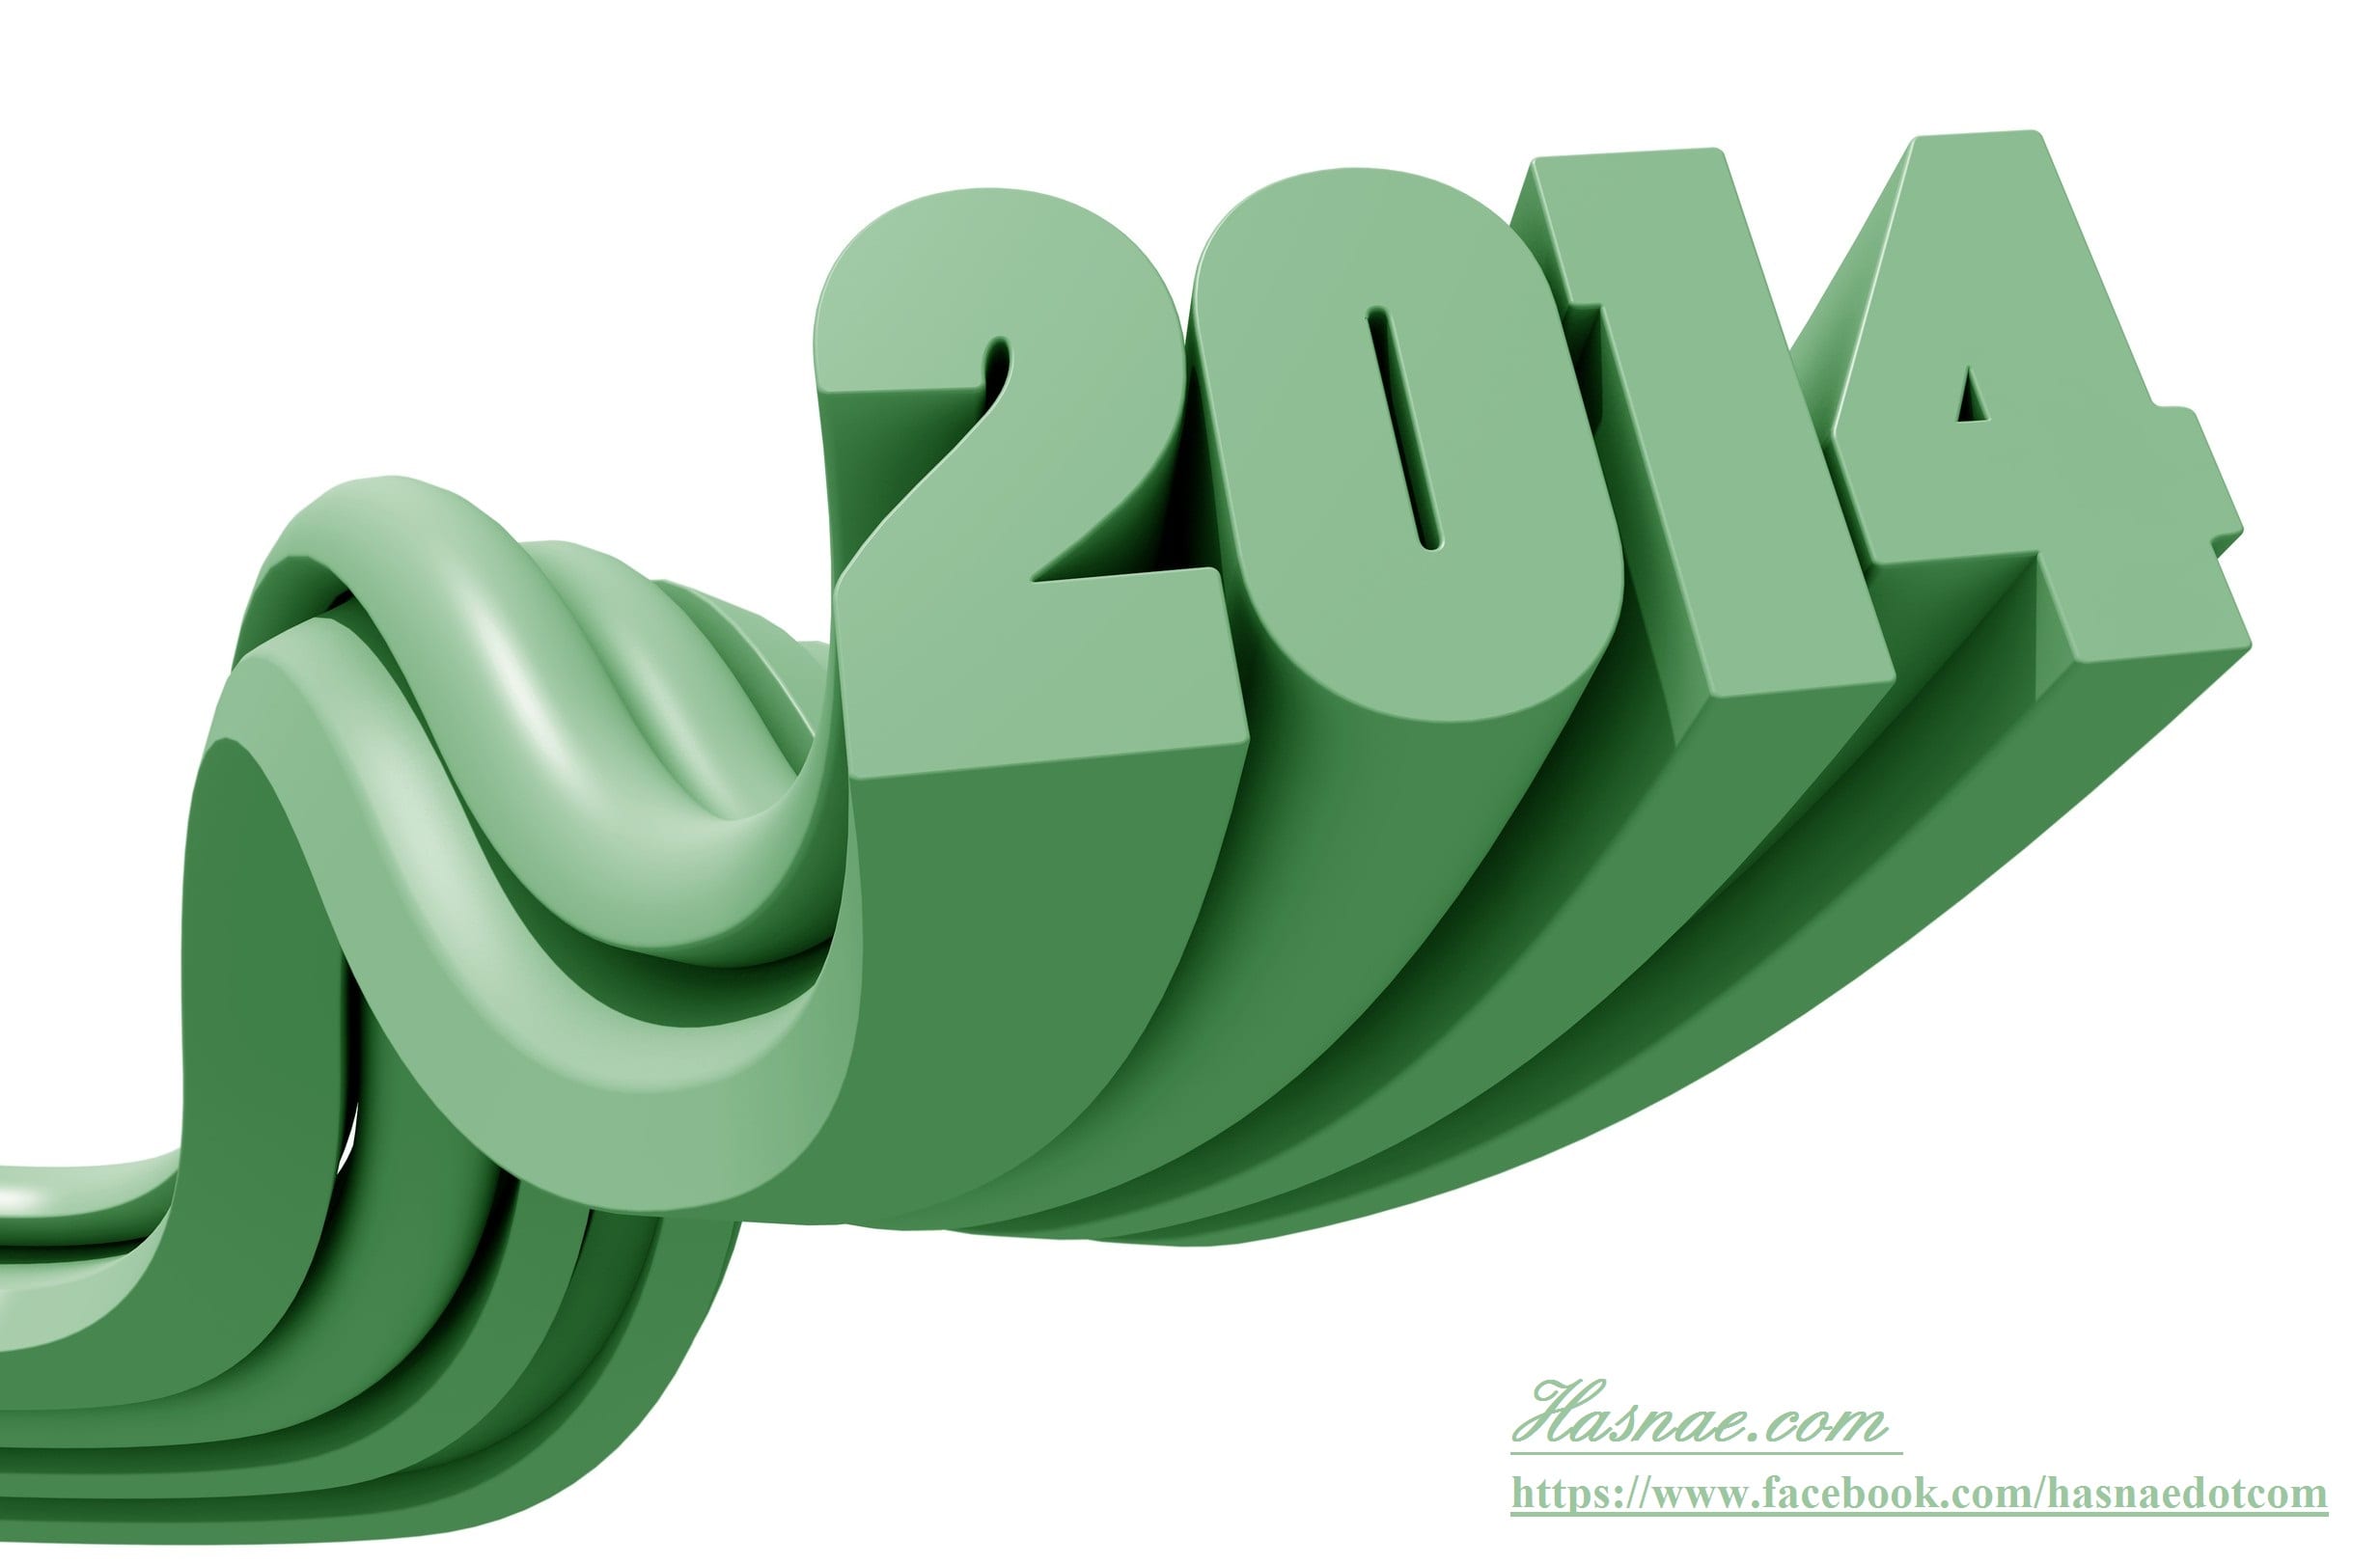 Belles Photos pour la New Year... Bonne année 2014 - 1